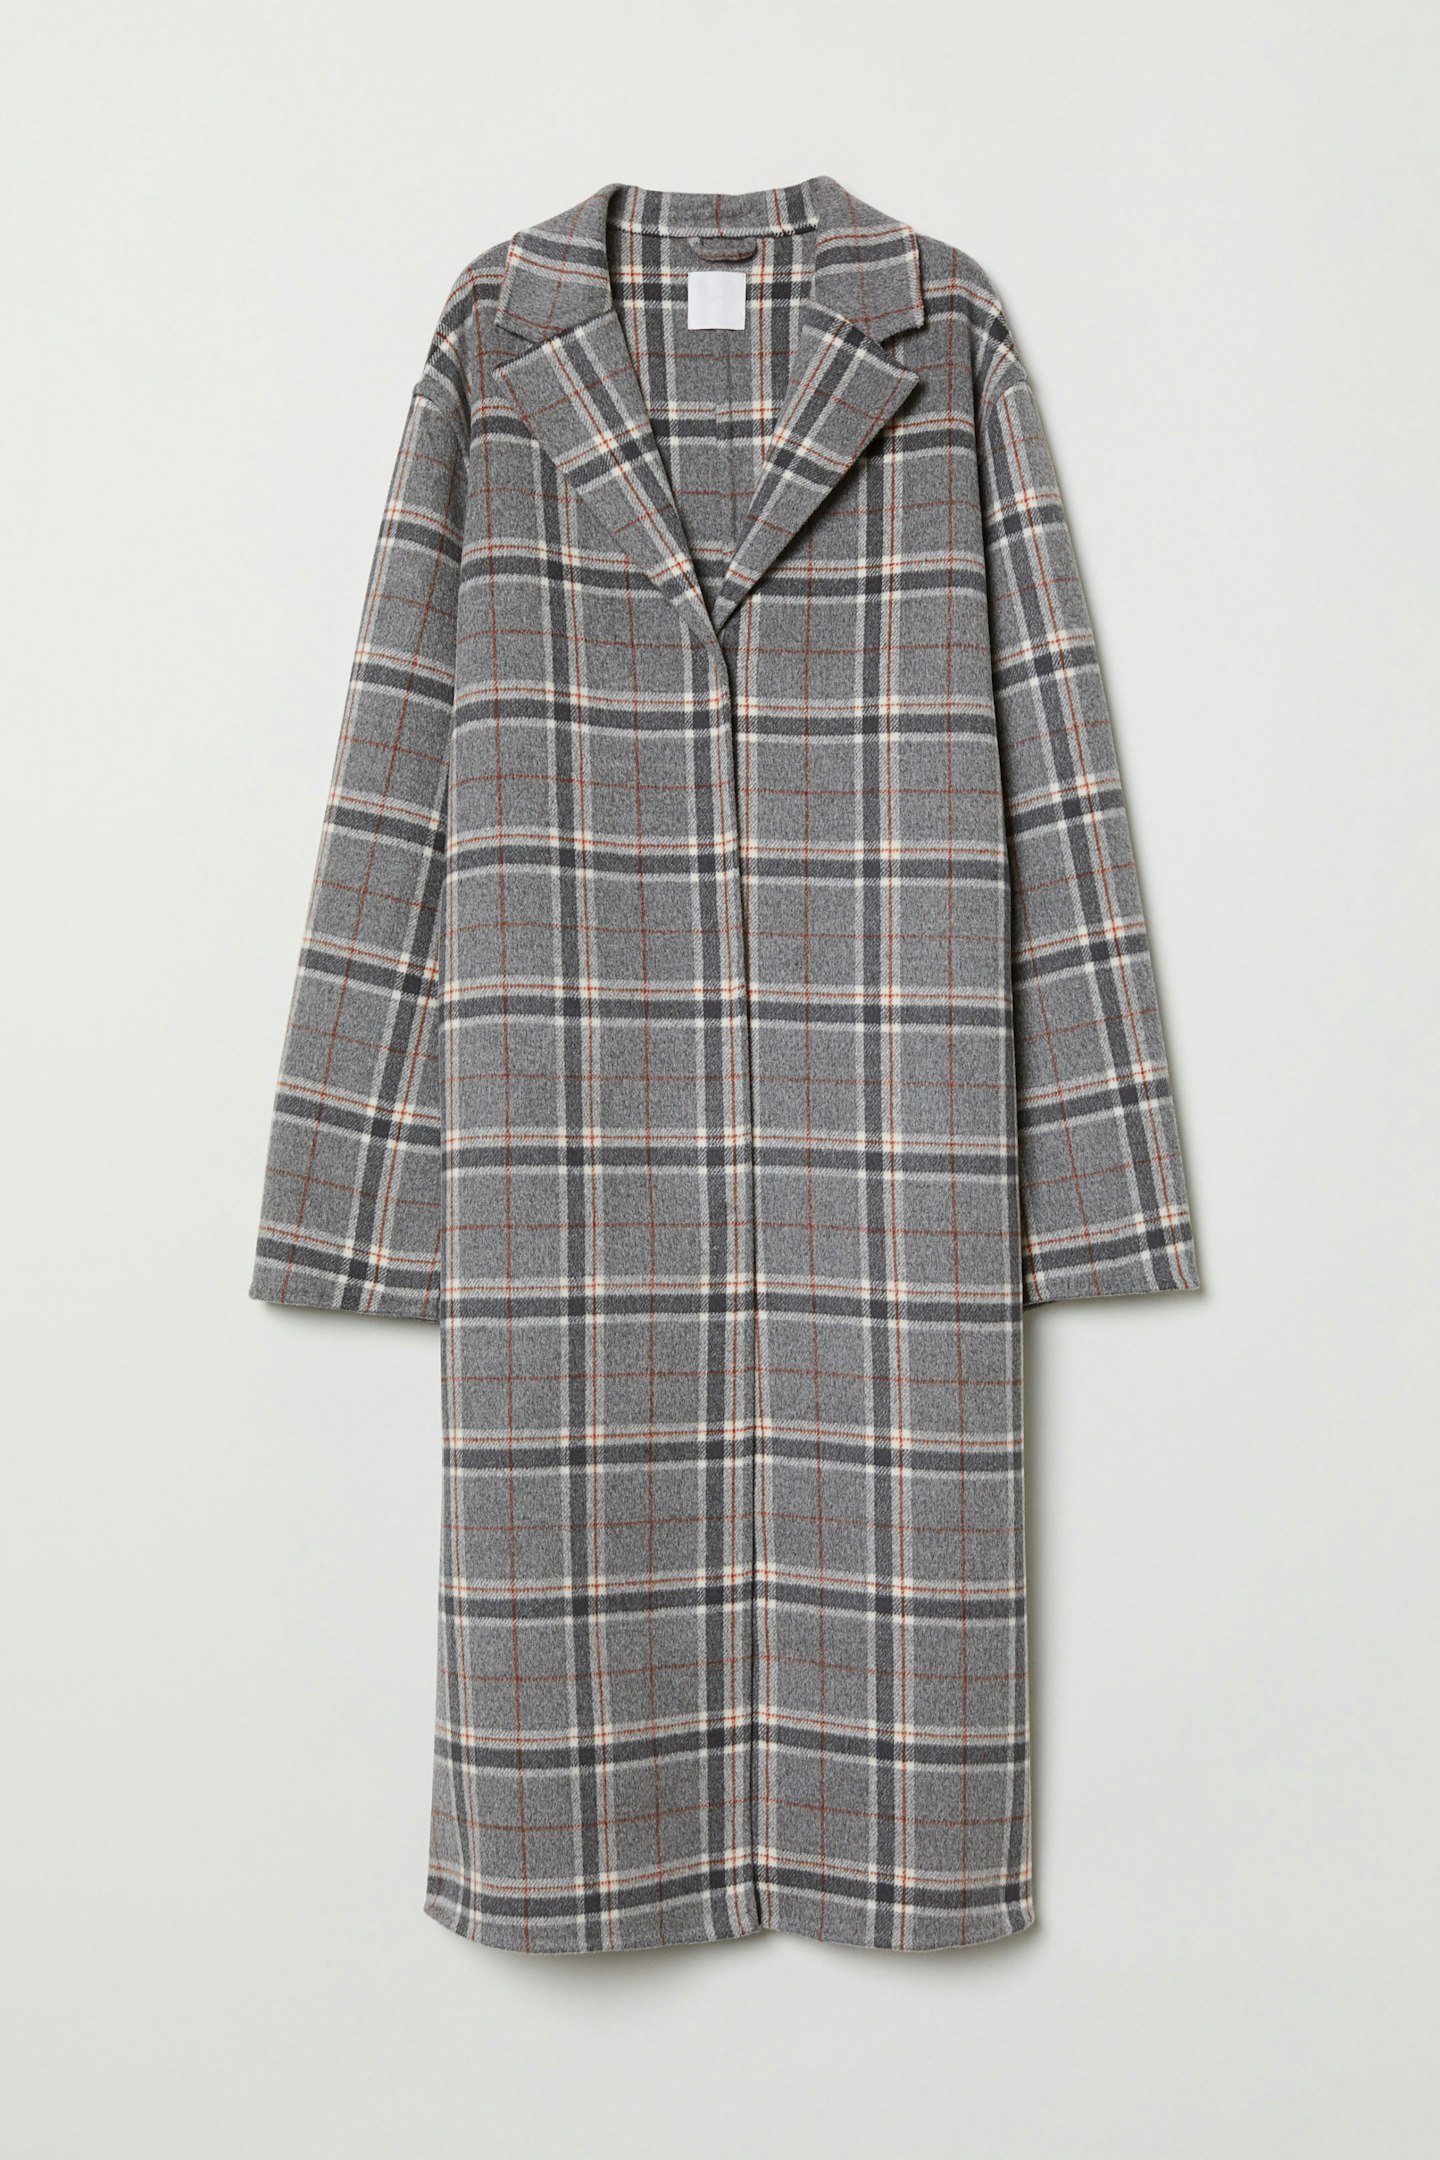 H&M, Cashmere Blend Coat, £199.99